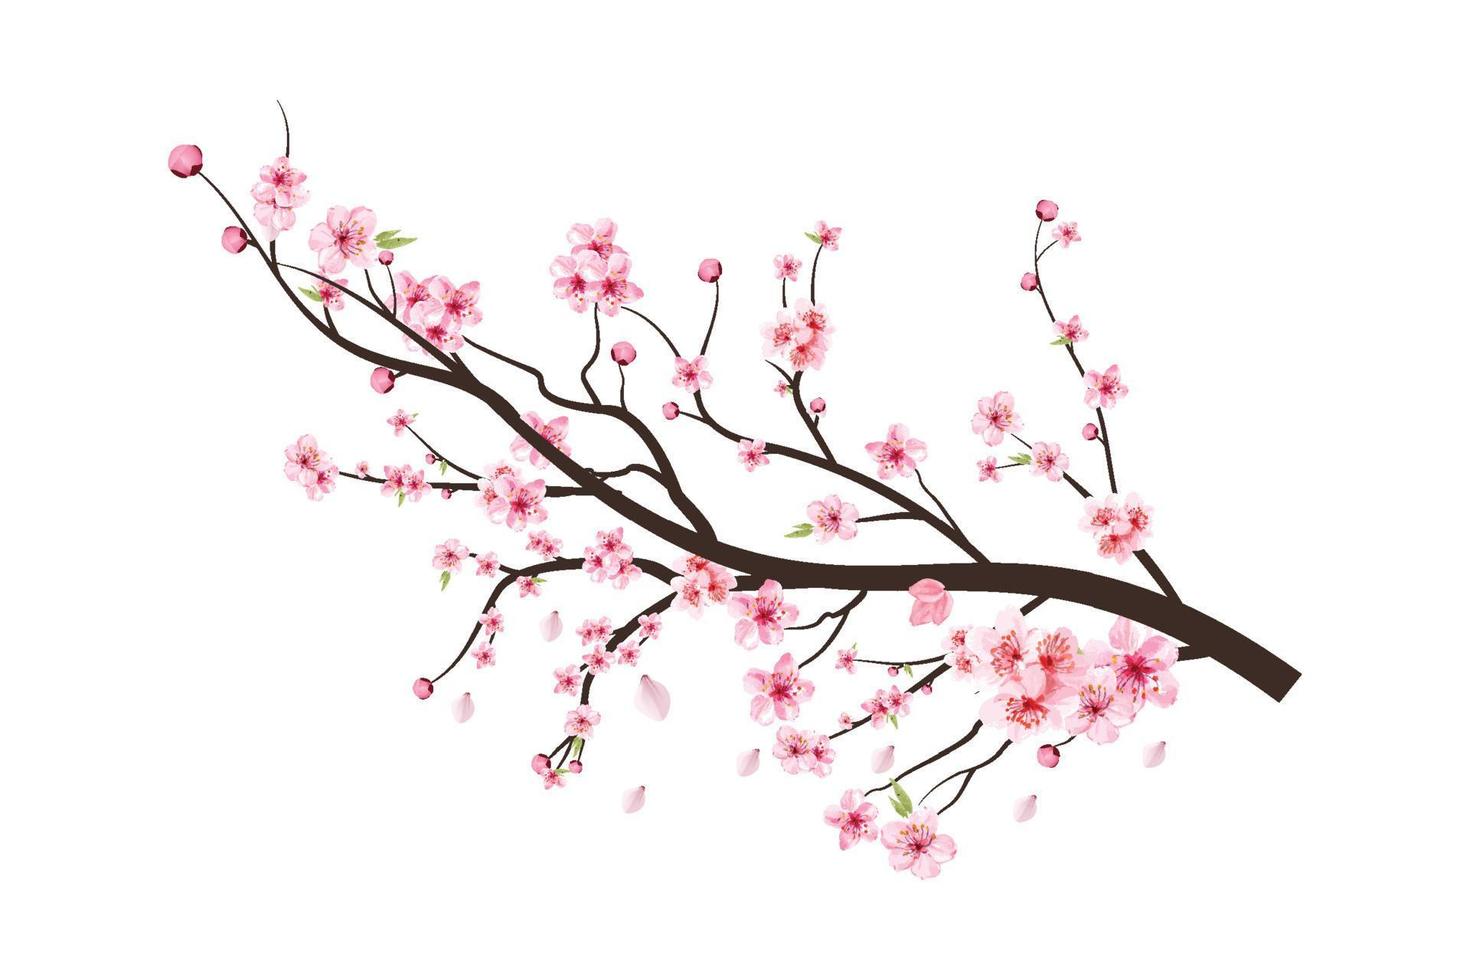 rama de un árbol de cerezo en flor con la difusión de la flor rosa. rama de flor de cerezo con sakura. vector de flor de acuarela. flor de cerezo acuarela. sakura sobre fondo blanco. flor sobre fondo blanco.